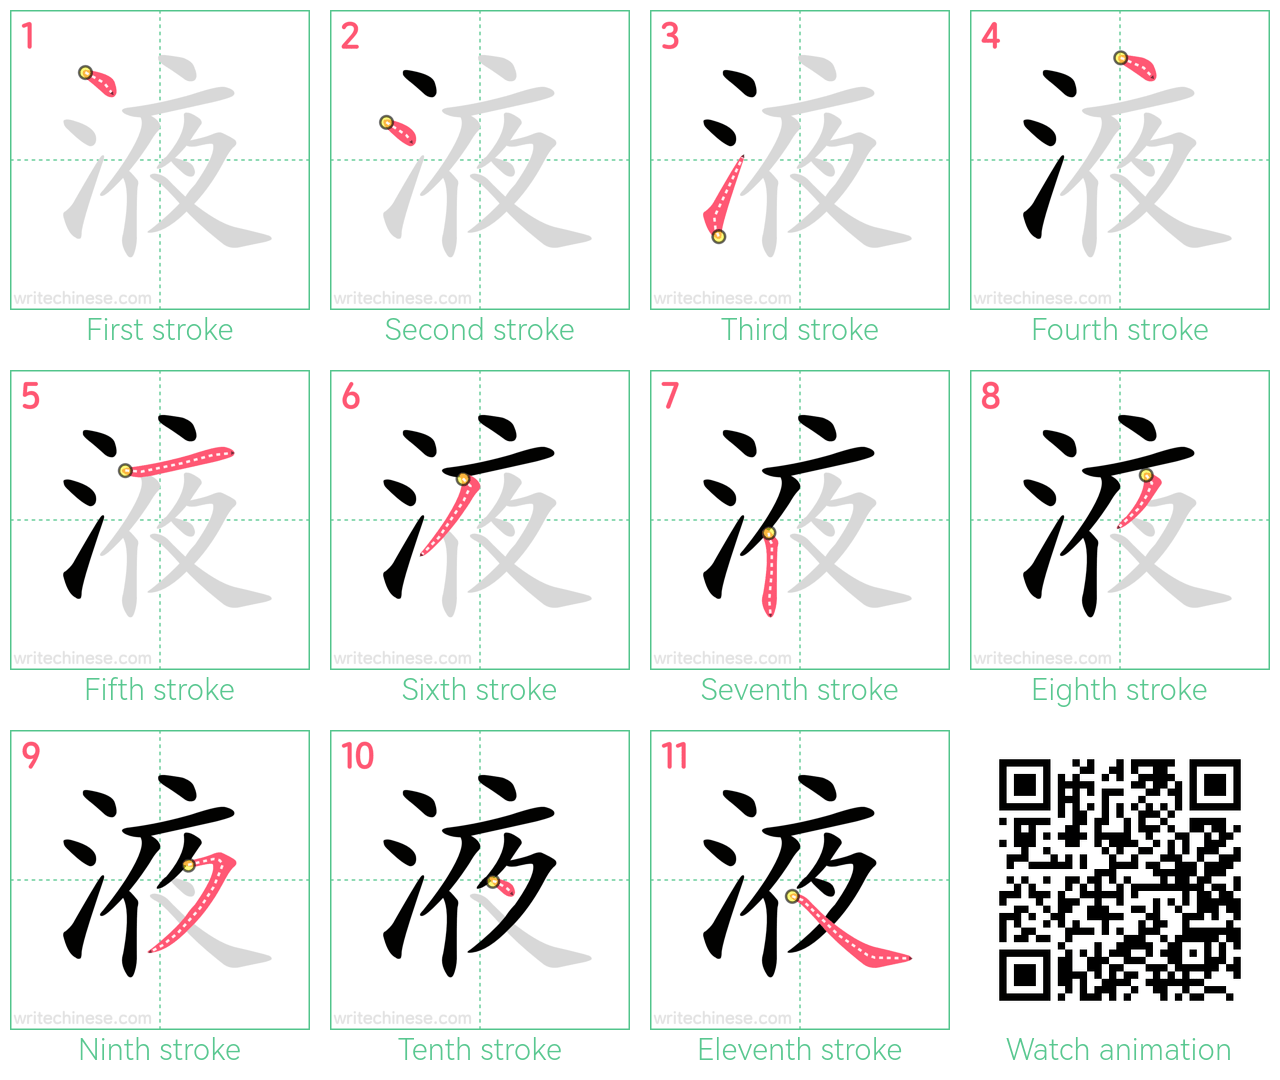 液 step-by-step stroke order diagrams